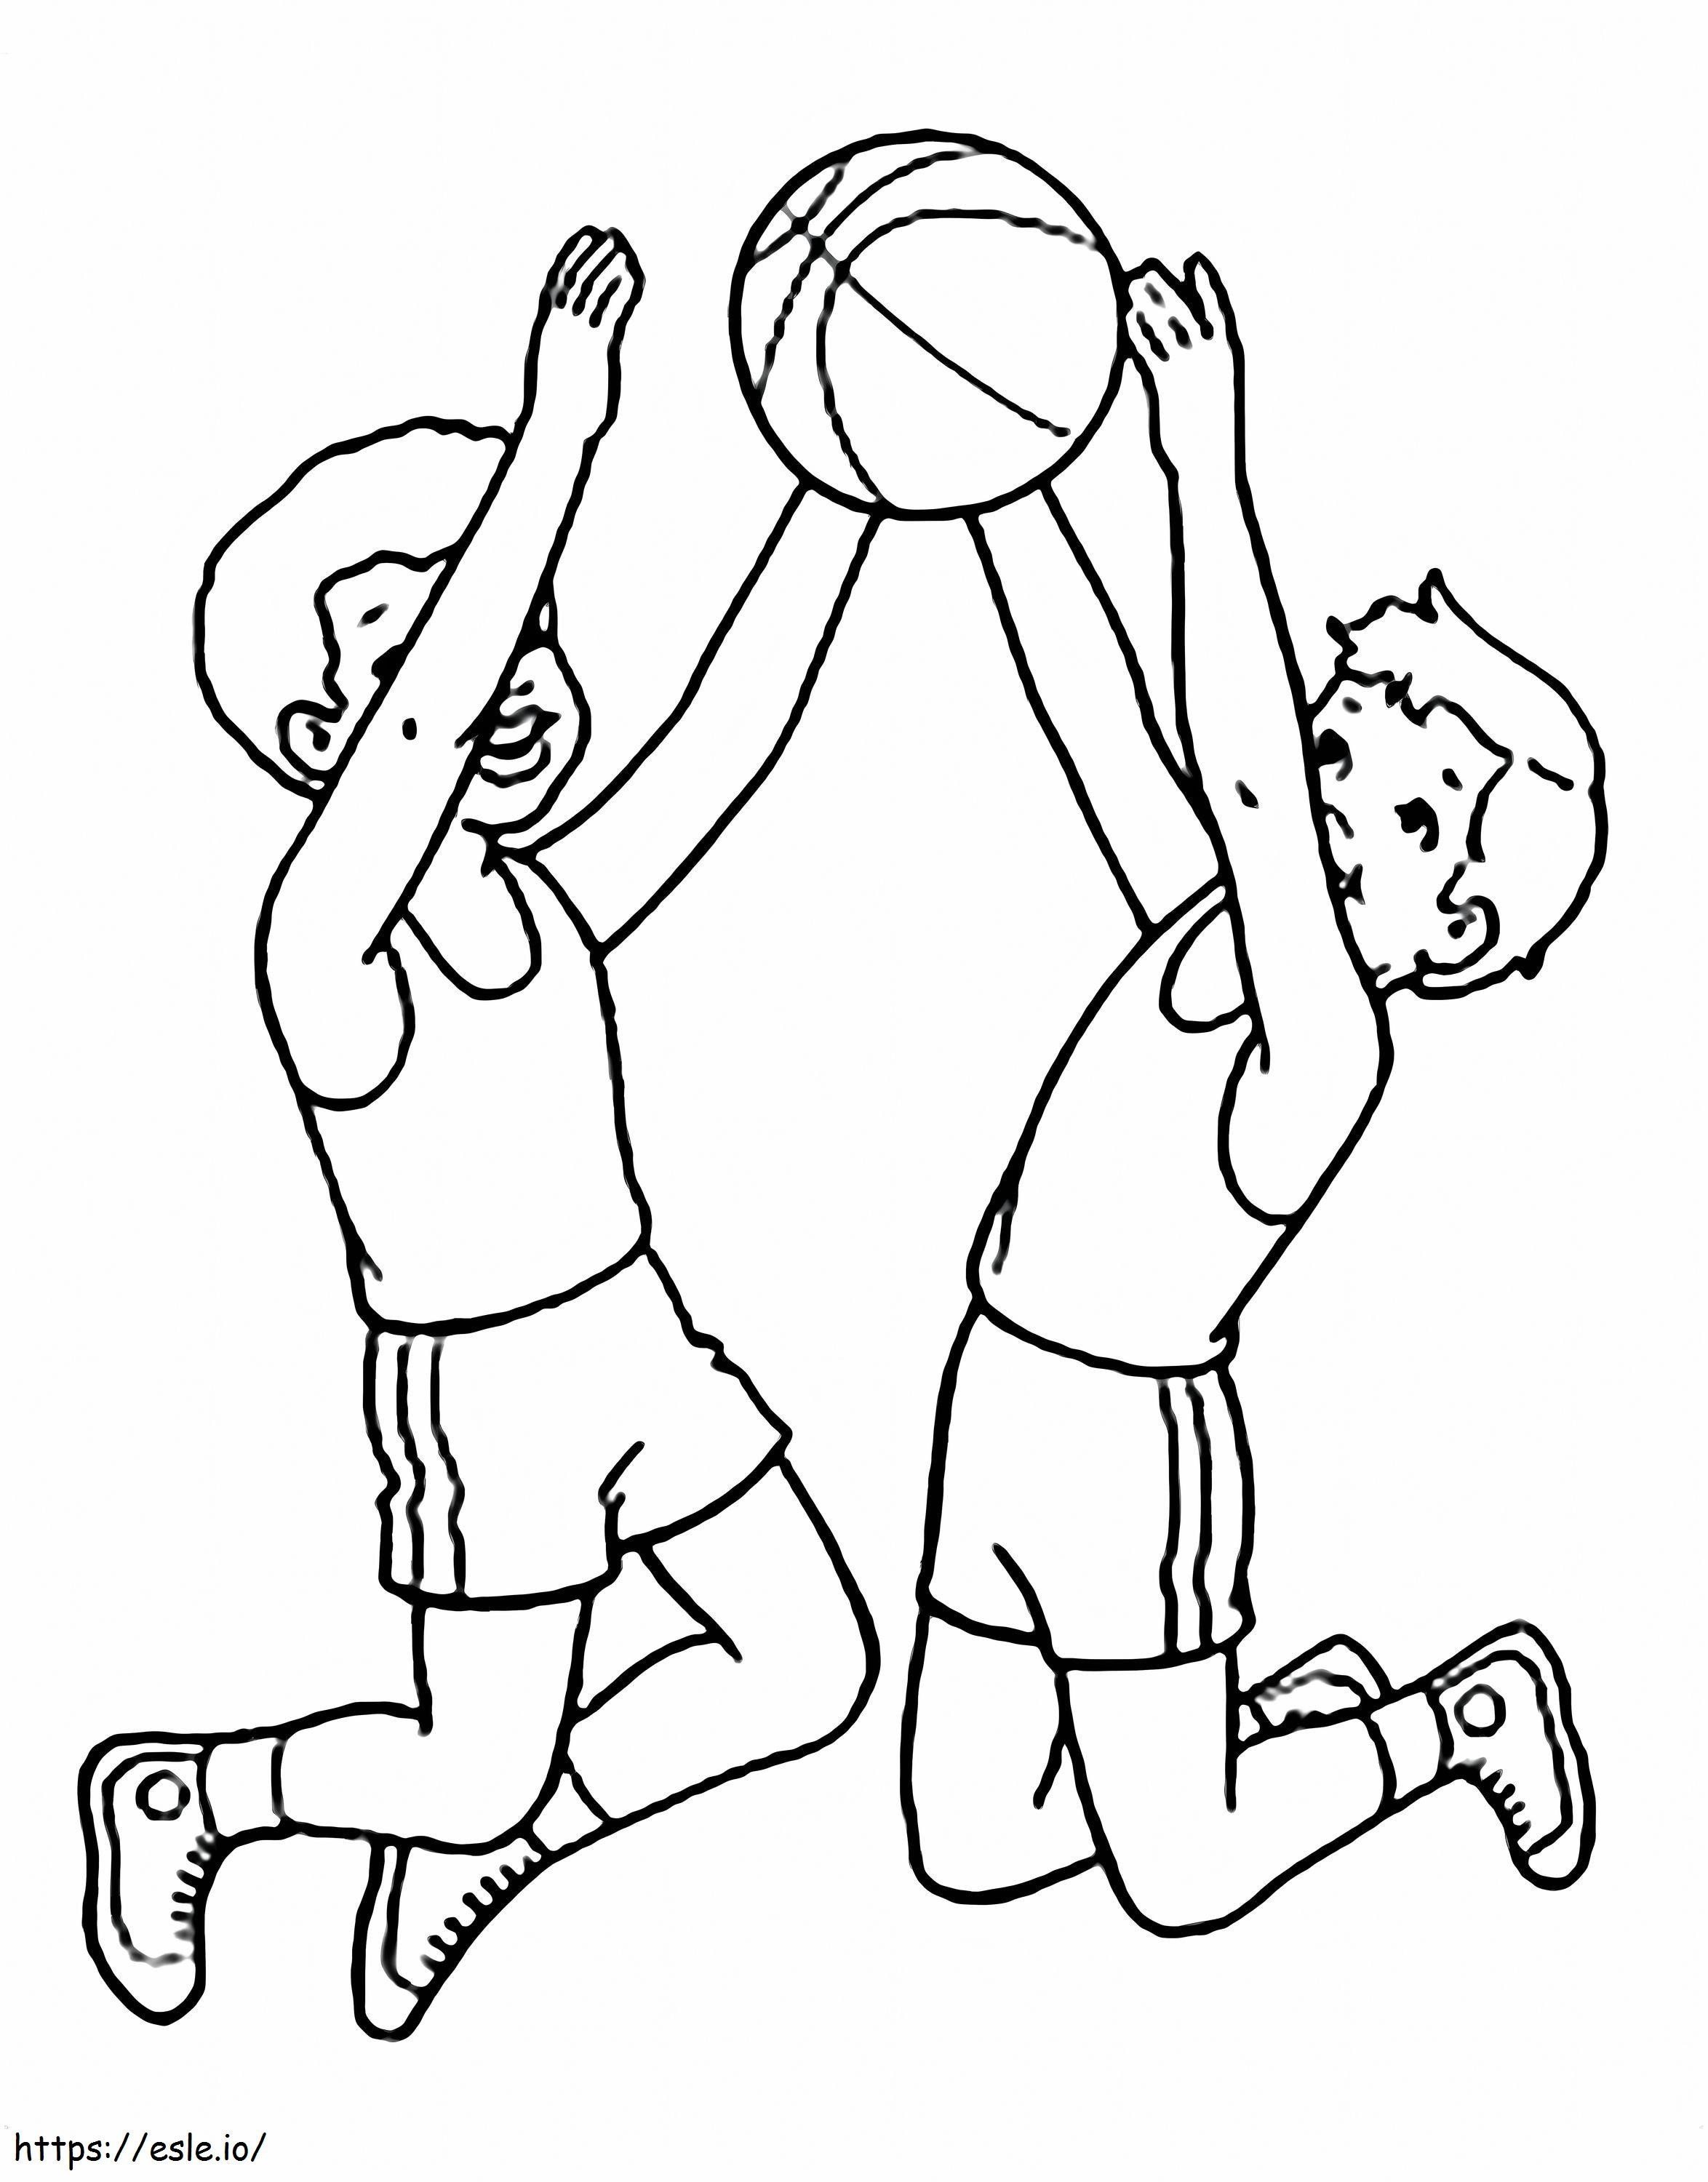 Coloriage Basket-ball pour les enfants à imprimer dessin